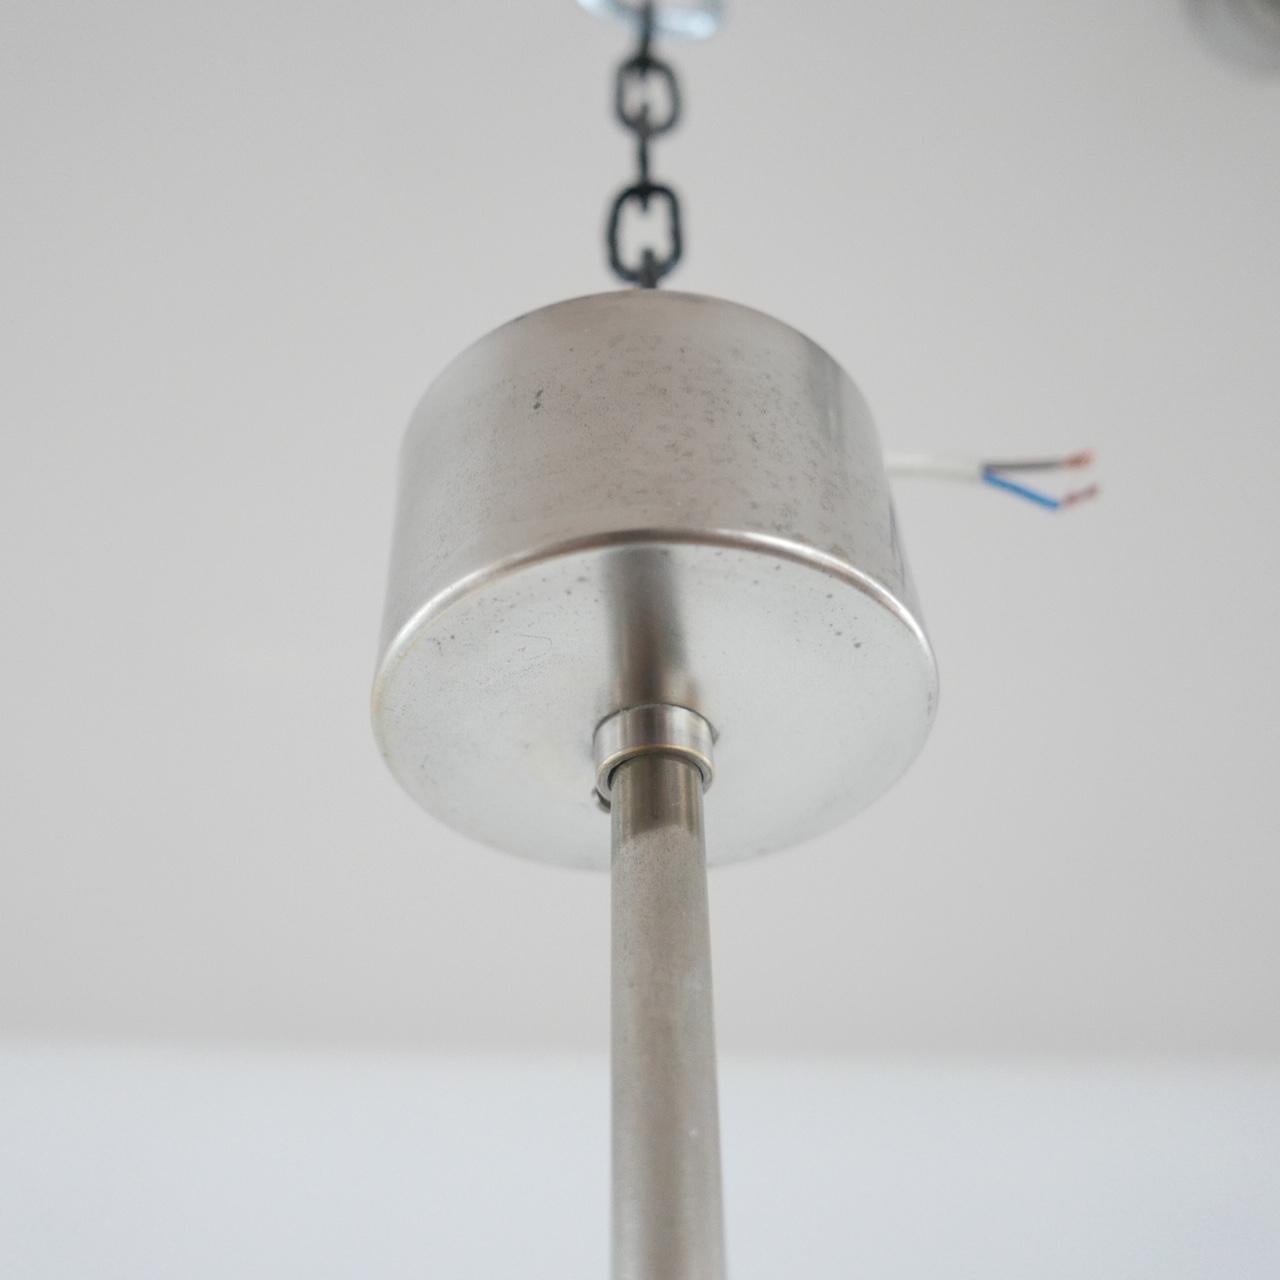 Mid-20th Century Italian Pendant Light Attributed to Ignazio Gardella For Sale